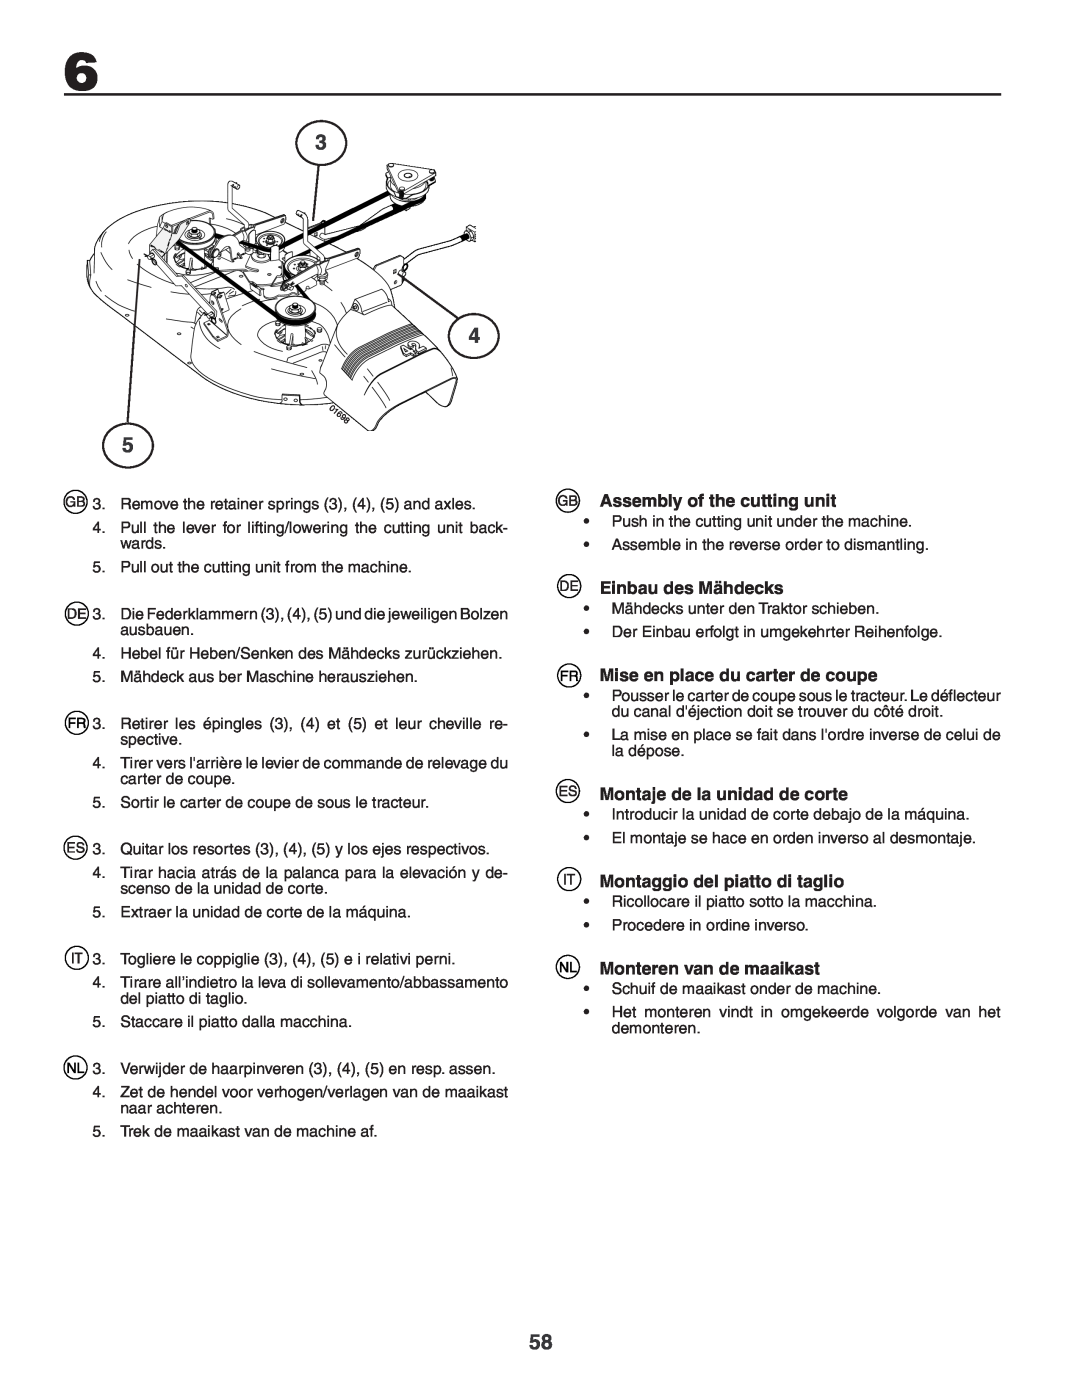 Husqvarna YTH180XP instruction manual Assembly of the cutting unit, Einbau des Mähdecks, Mise en place du carter de coupe 